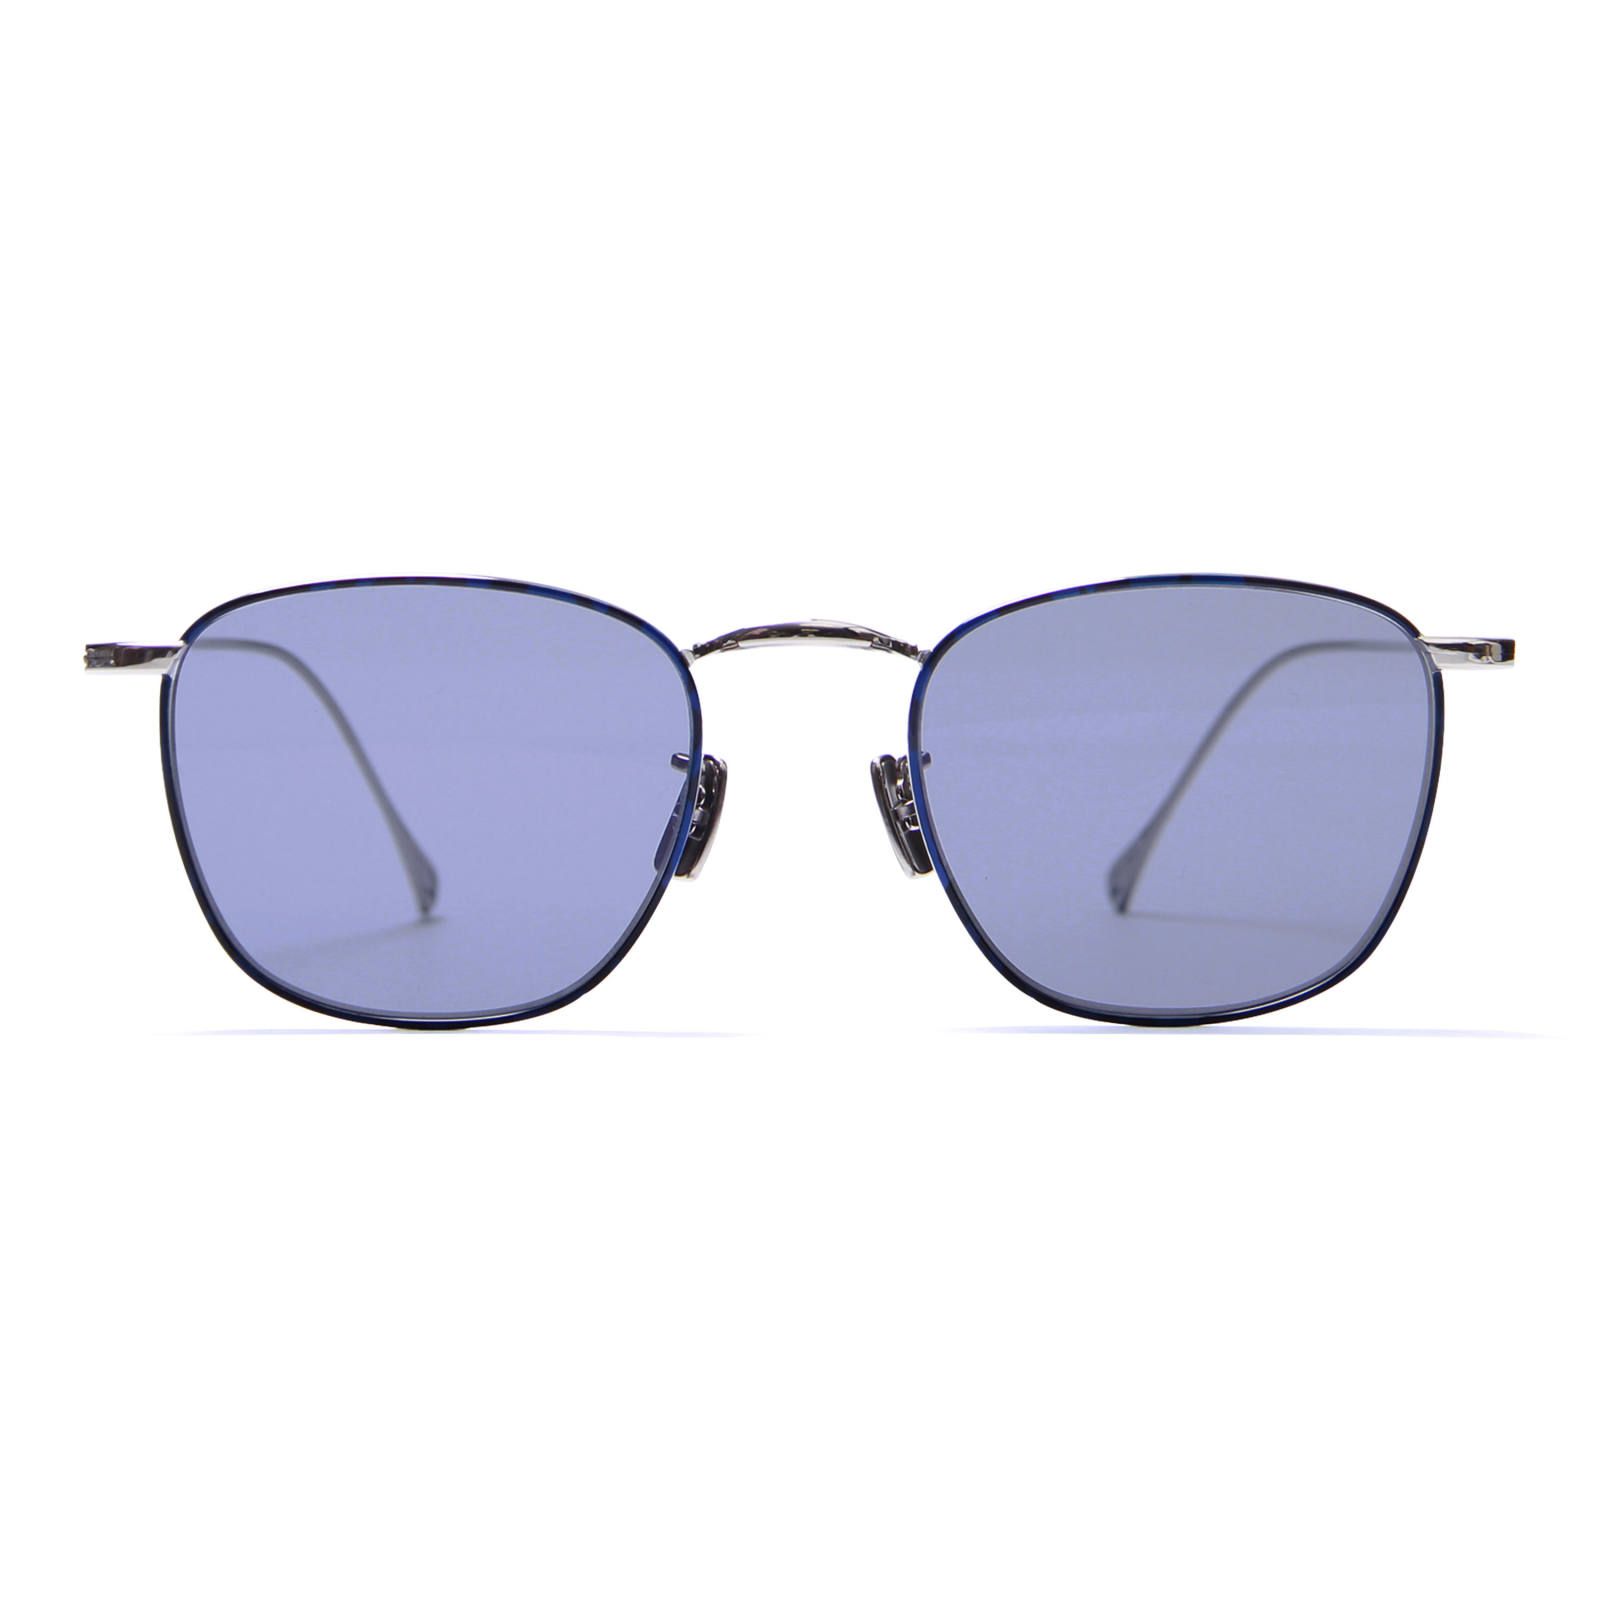 Sara/Silver/Blue (Sunglasses) - 47□19-145